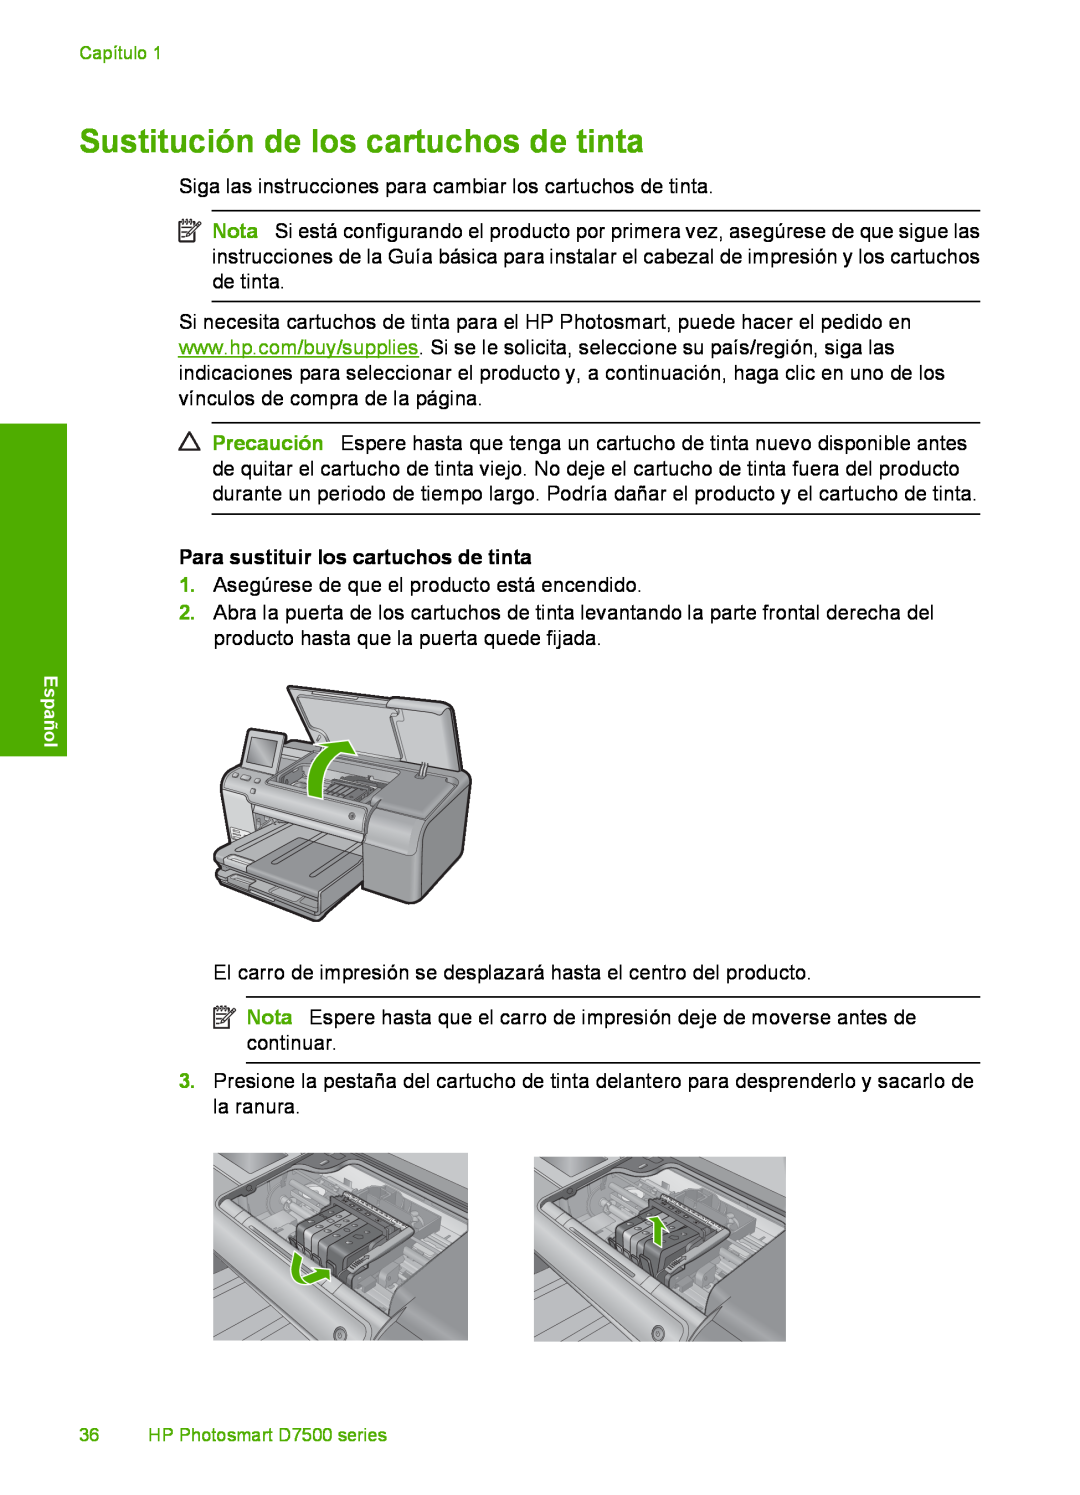 HP D7560 manual Sustitución de los cartuchos de tinta, Para sustituir los cartuchos de tinta 